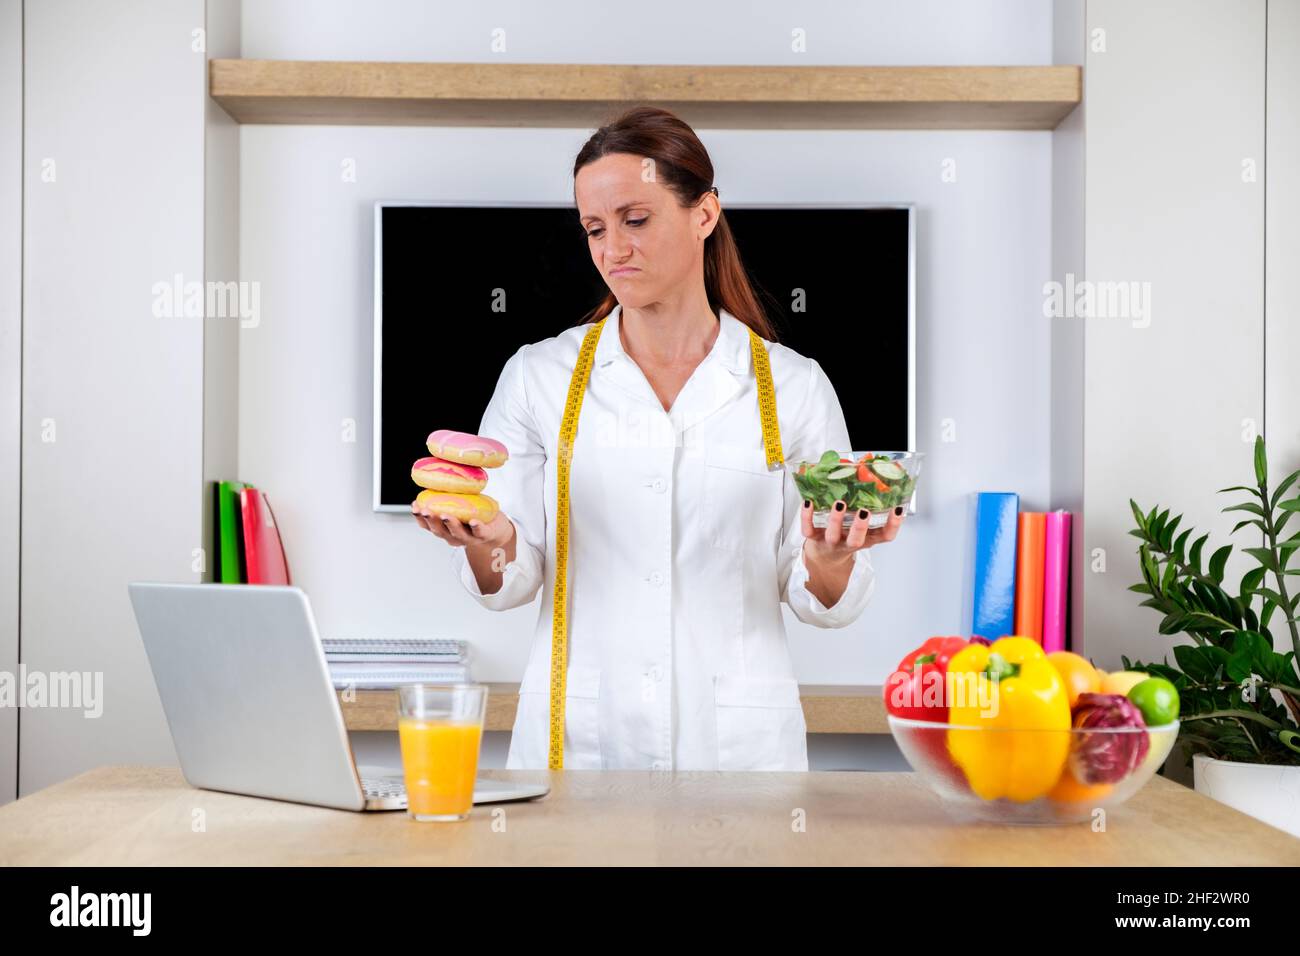 Jeune femme portant un uniforme nutritionniste tenant une salade et des beignets avec des émotions tristes dans une salle de bureau moderne et lumineuse.Choisir entre des aliments sains Banque D'Images